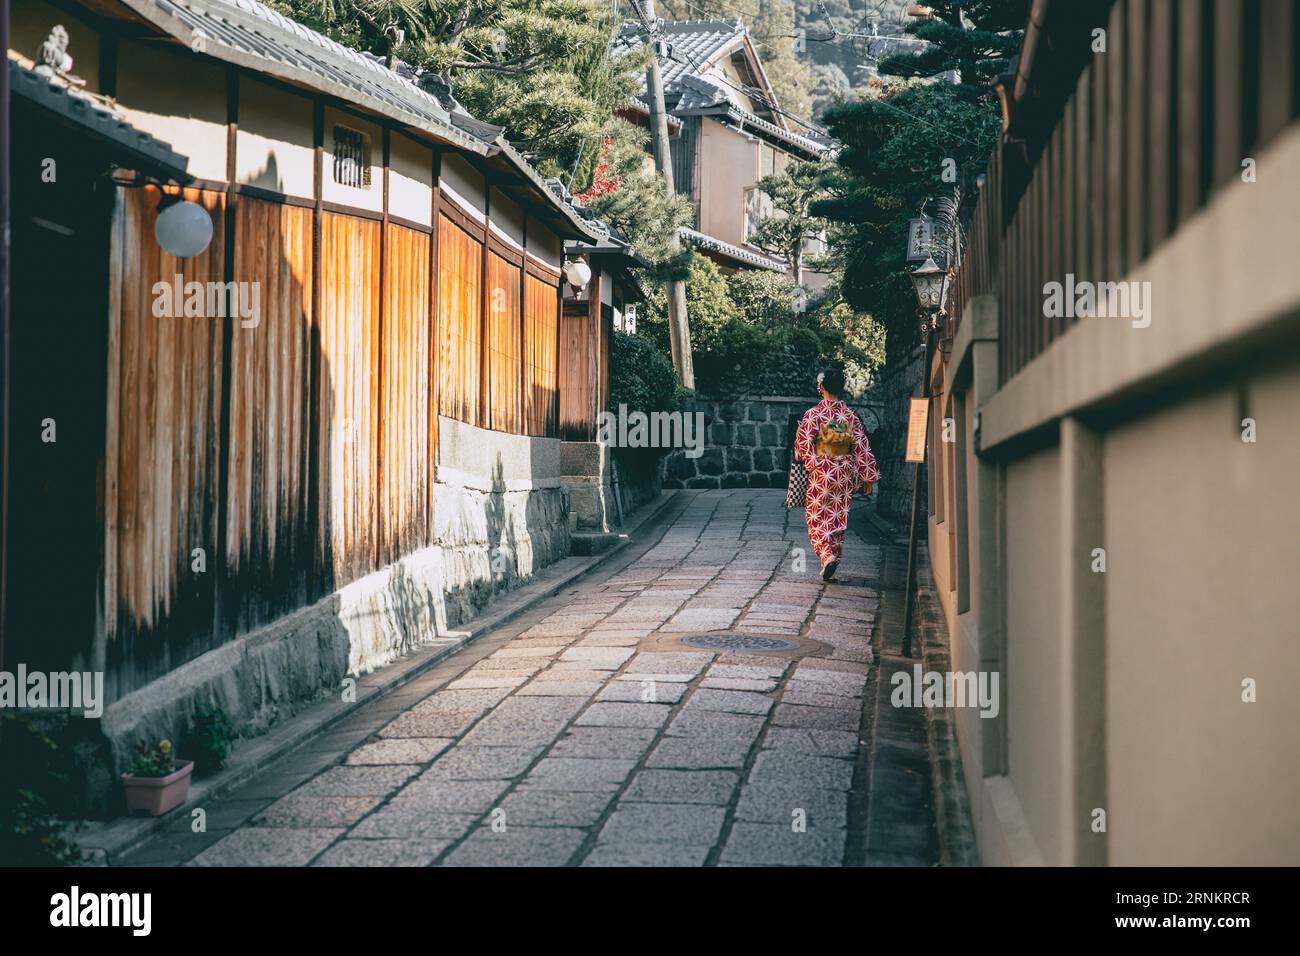 Callejón tranquilo en el distrito de Kioto Gion con una mujer Kimono japonesa caminando, estilo de vida antiguo de Japón Foto de stock